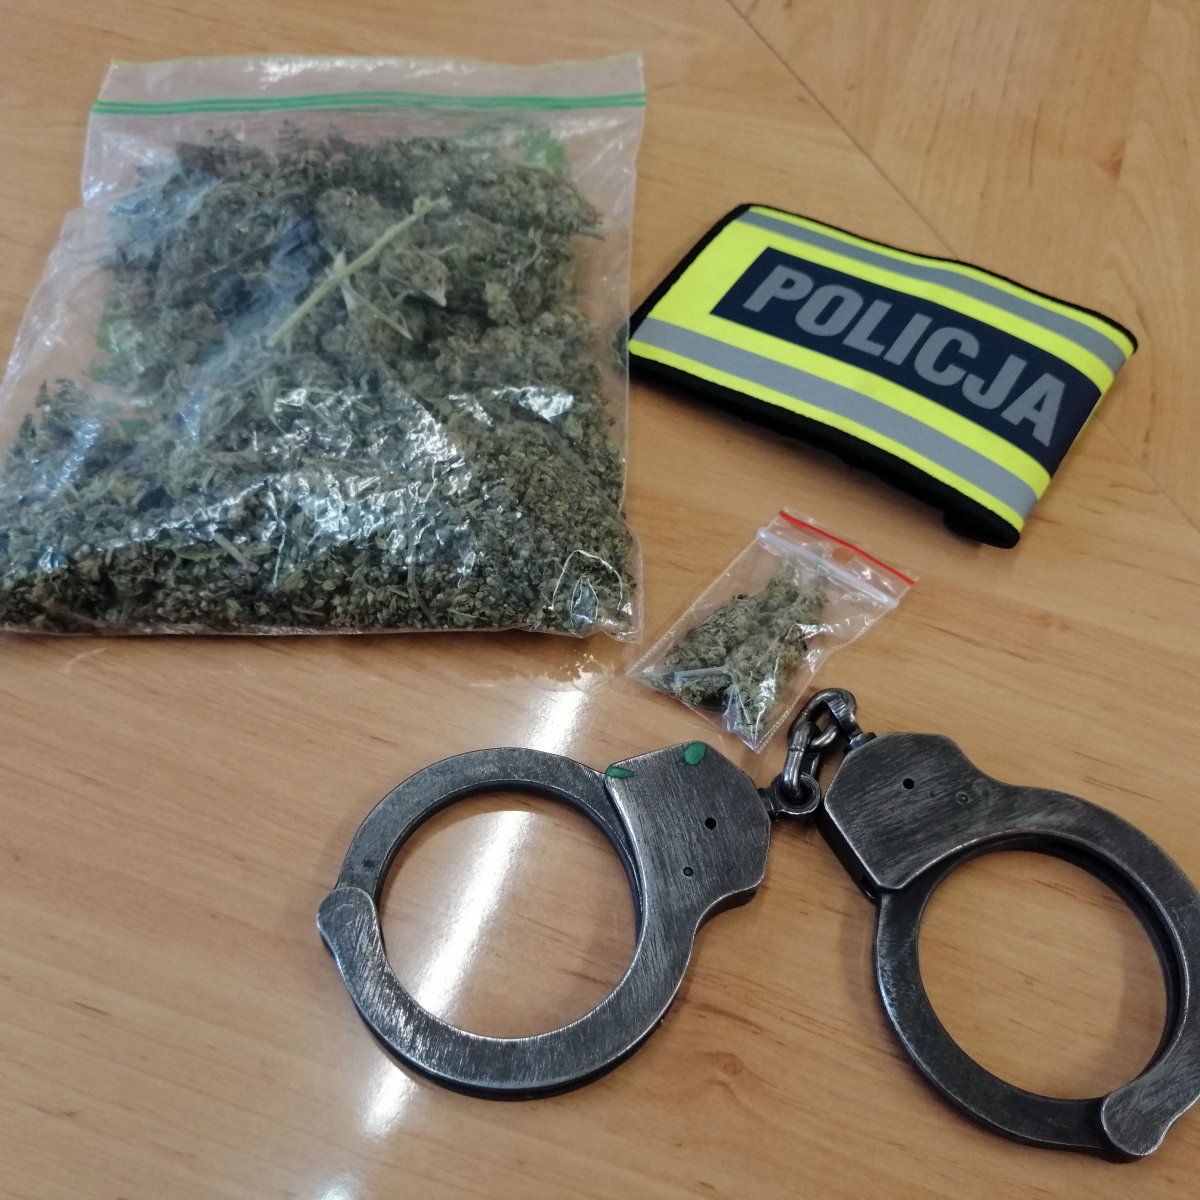 worek duży i mały z marihuaną, kajdanki i opaska z napisem Policja